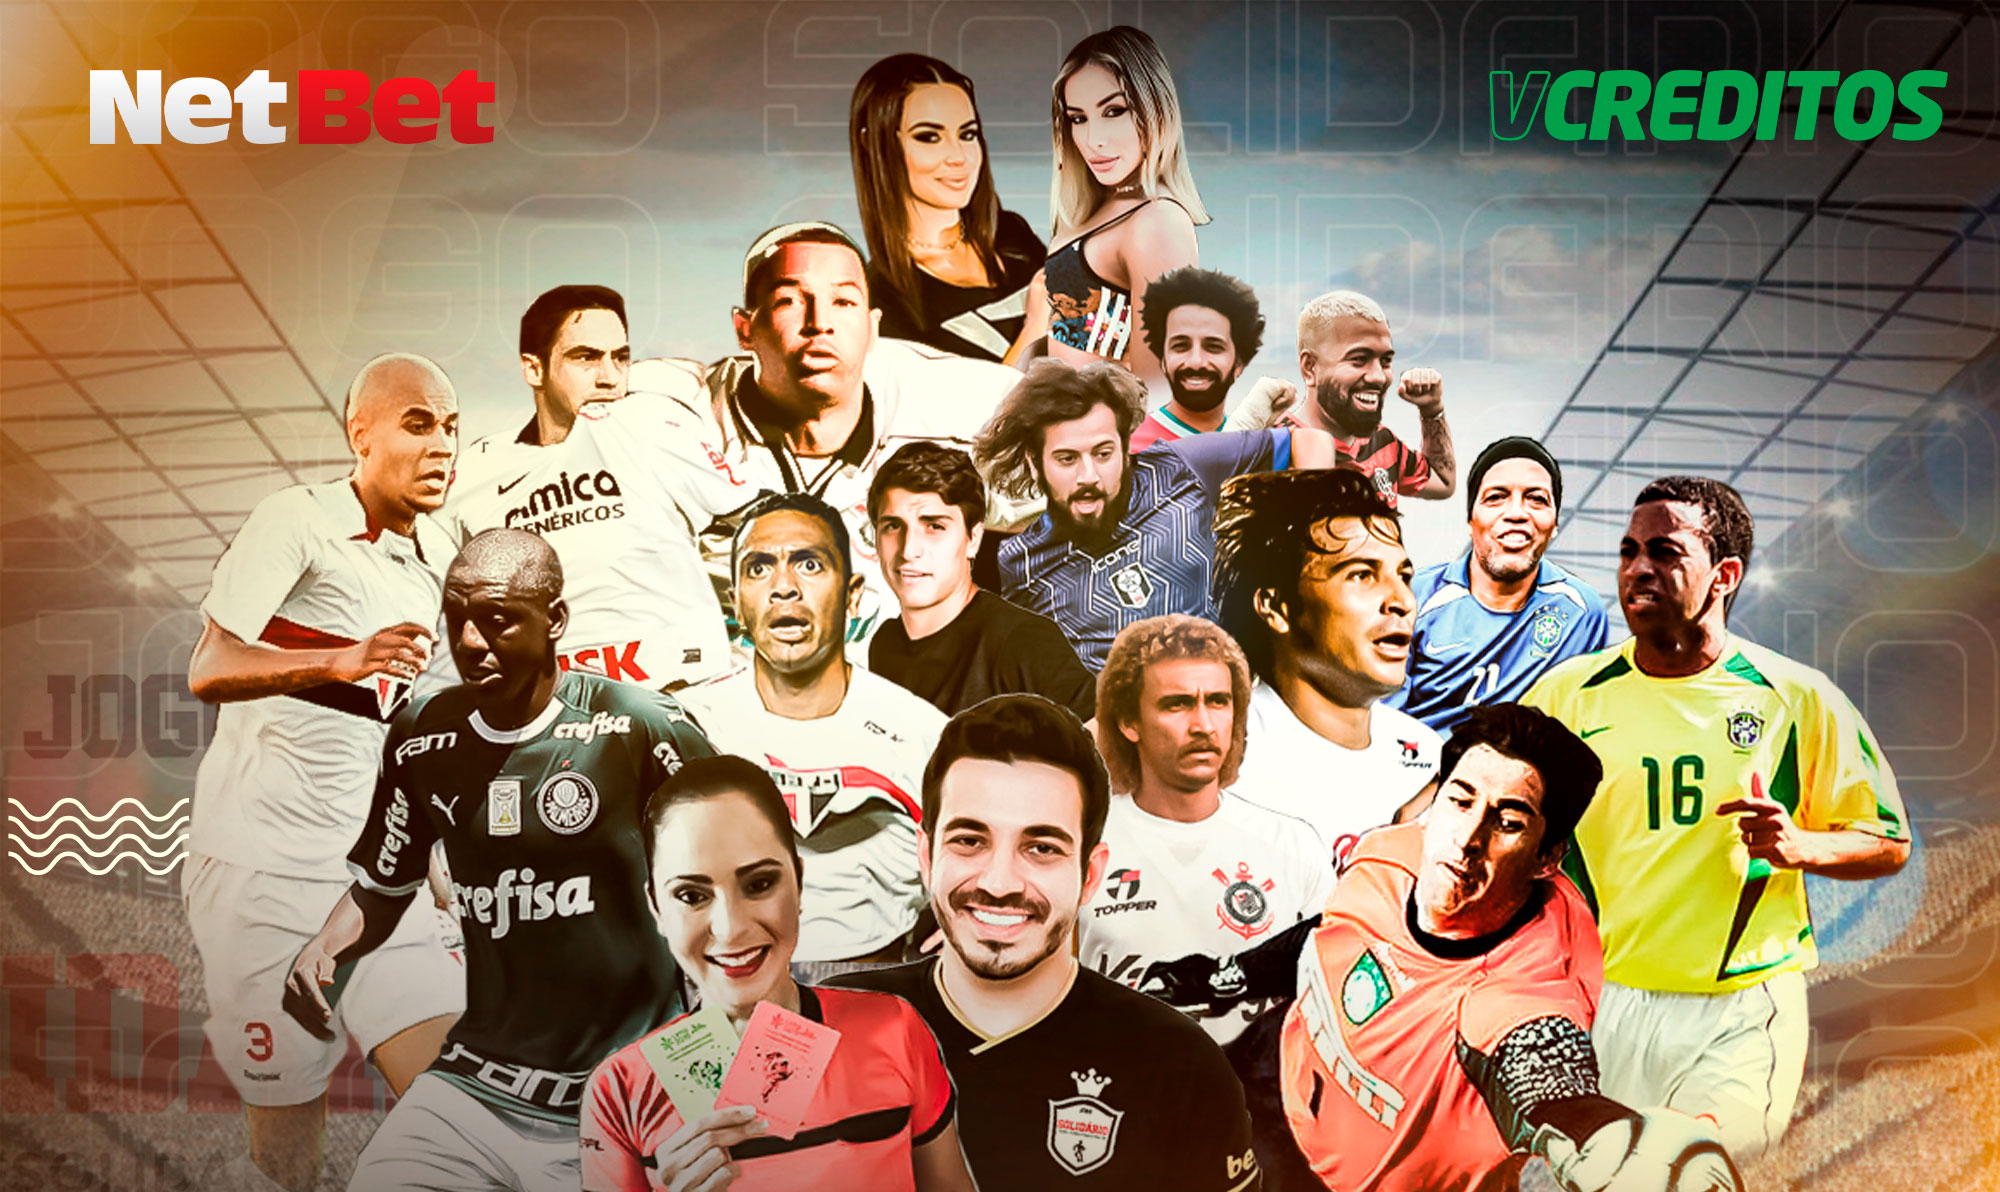 Imagem de Felipe Joioso com apoio em doações da NetBet, reúne craques do futebol e influencers em jogo beneficente